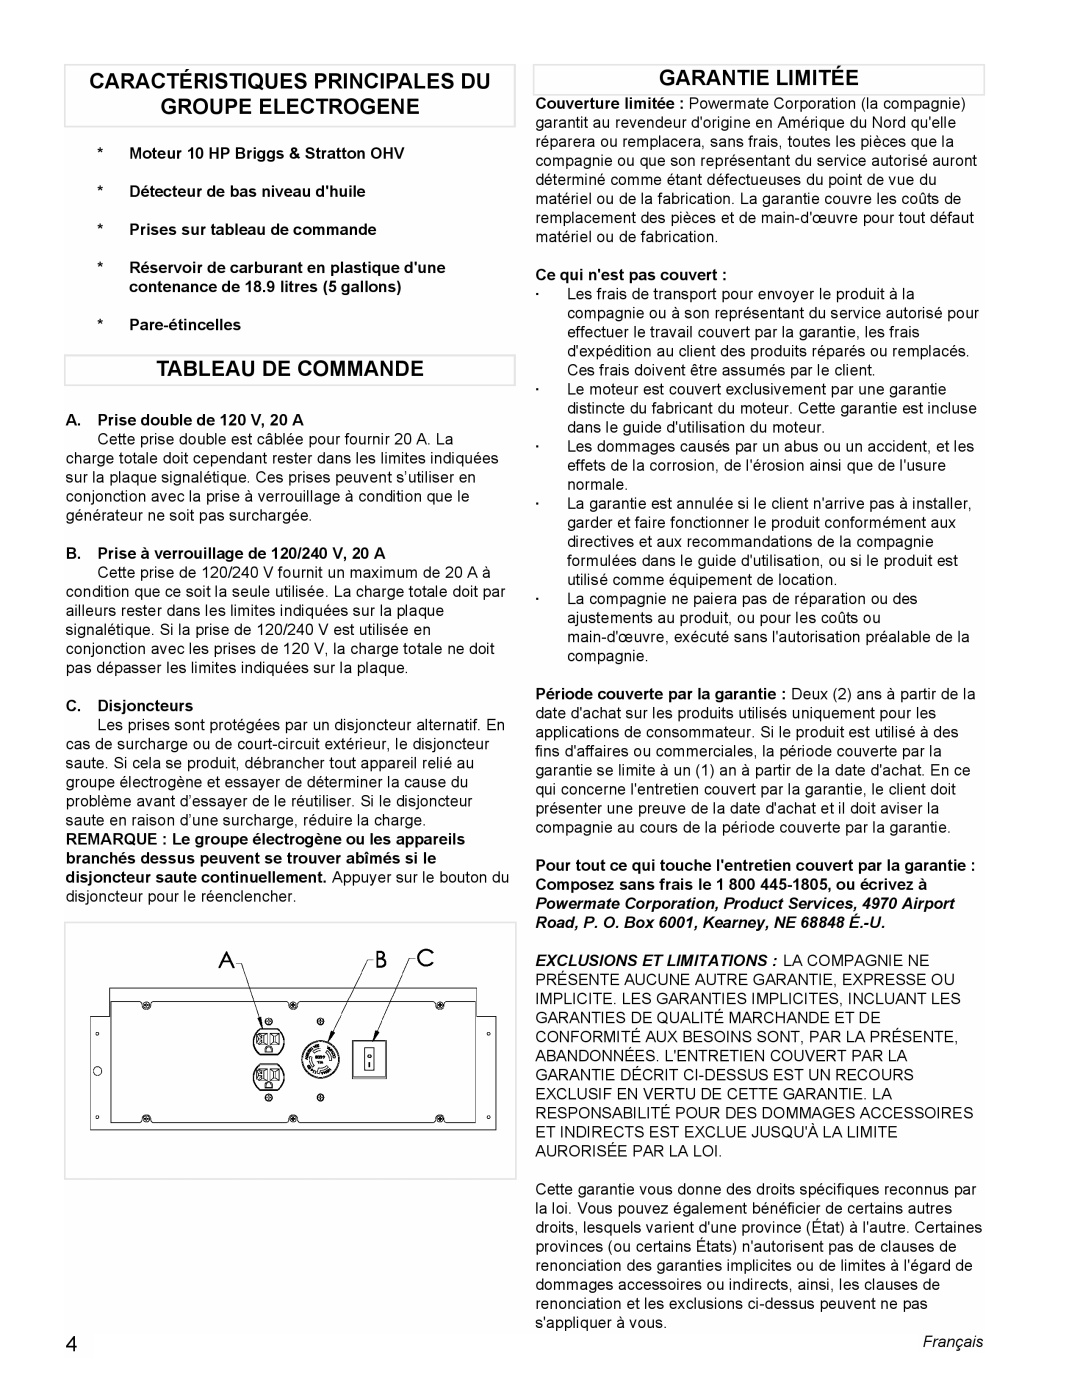 Powermate PMC545004 Caractéristiques Principales Du, Groupe Electrogene, Tableau De Commande, Garantie Limitée, Français 